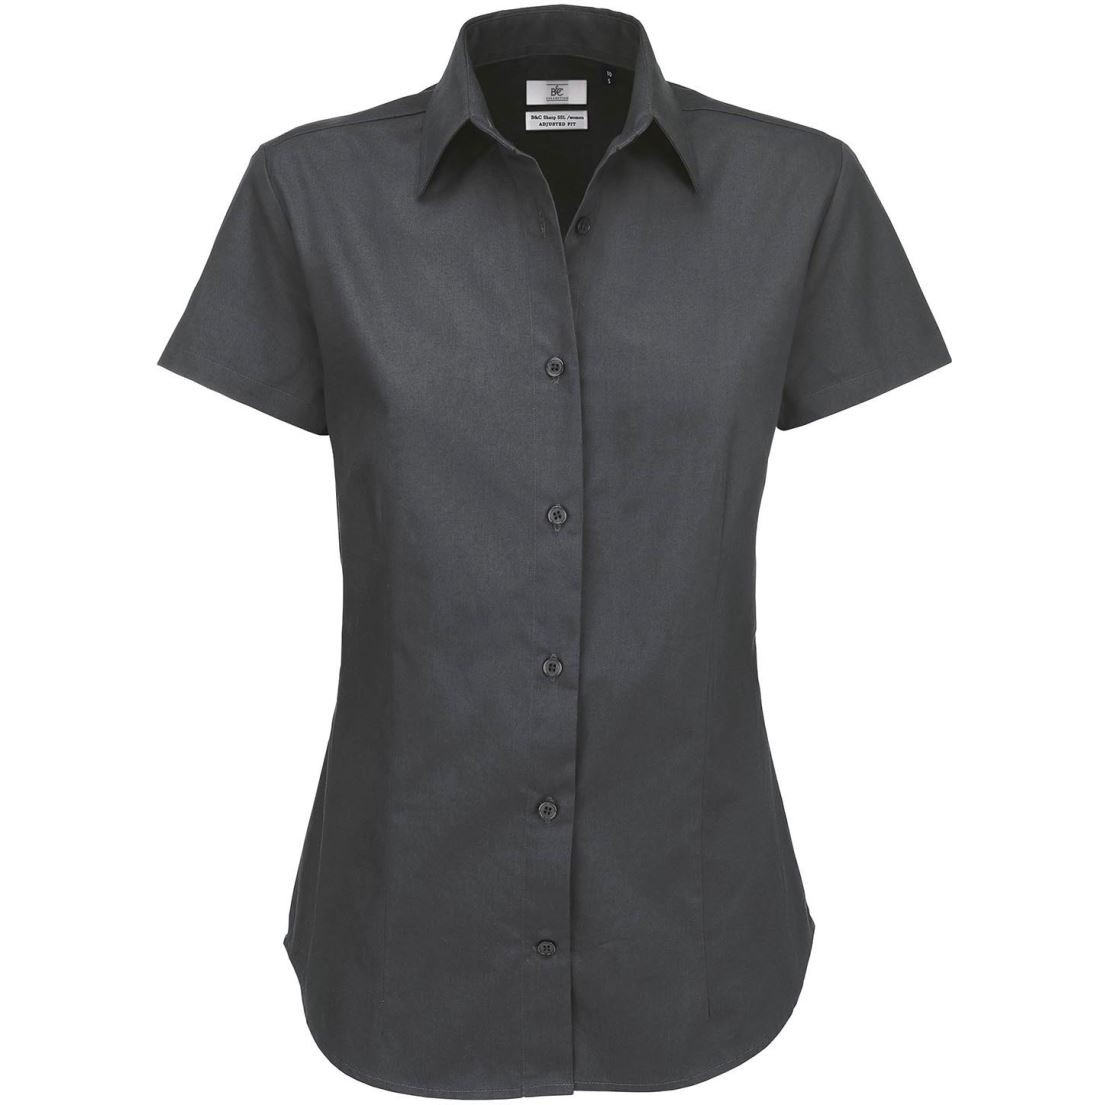 Dámská keprová košile B&C Sharp s krátkým rukávem - tmavě šedá, XS